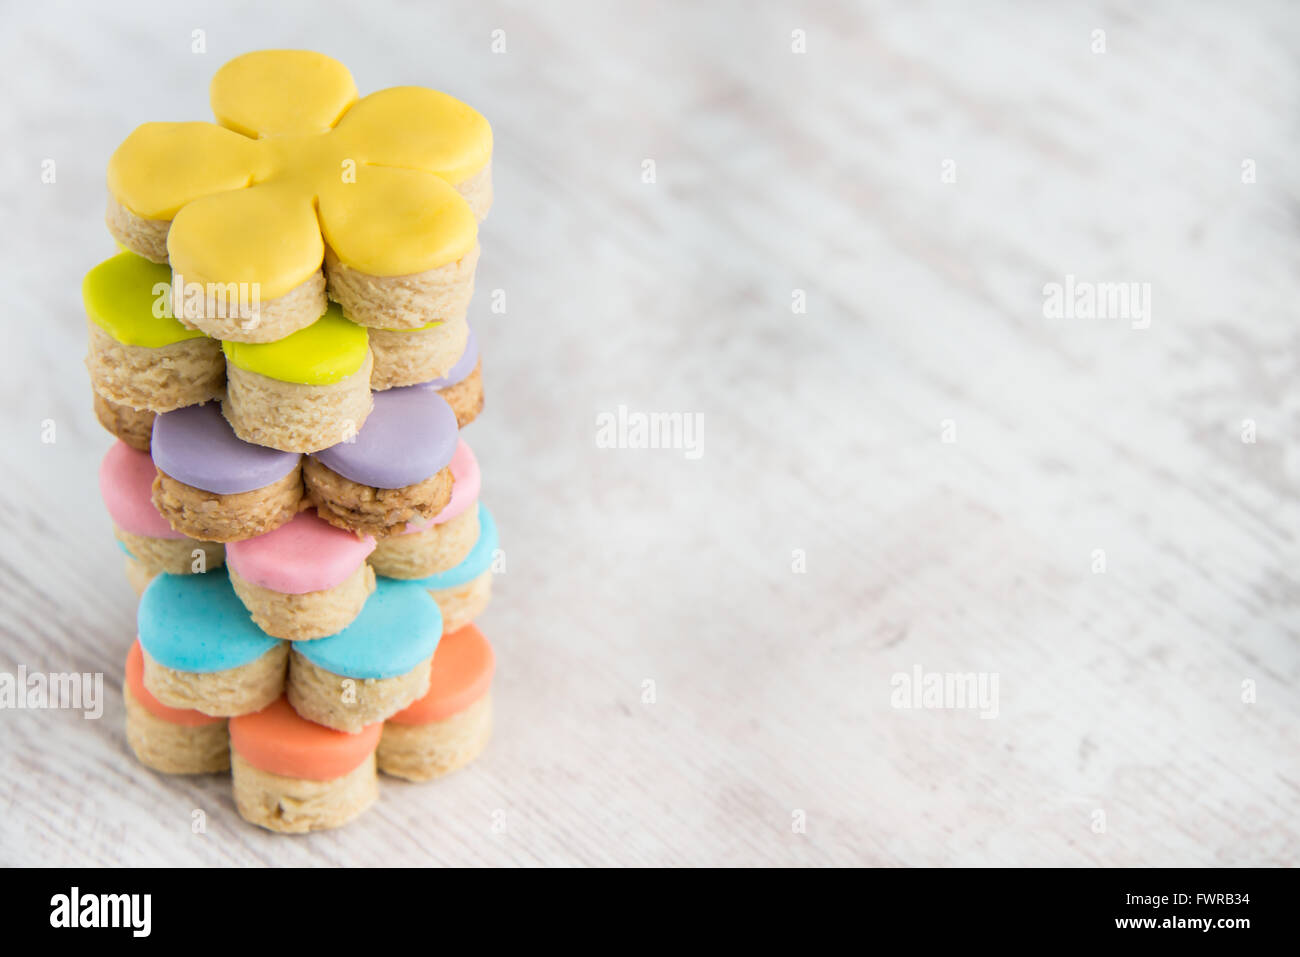 Libre de forme de fleurs colorées des fondants couverts des cookies sur un fond de bois blanc Banque D'Images